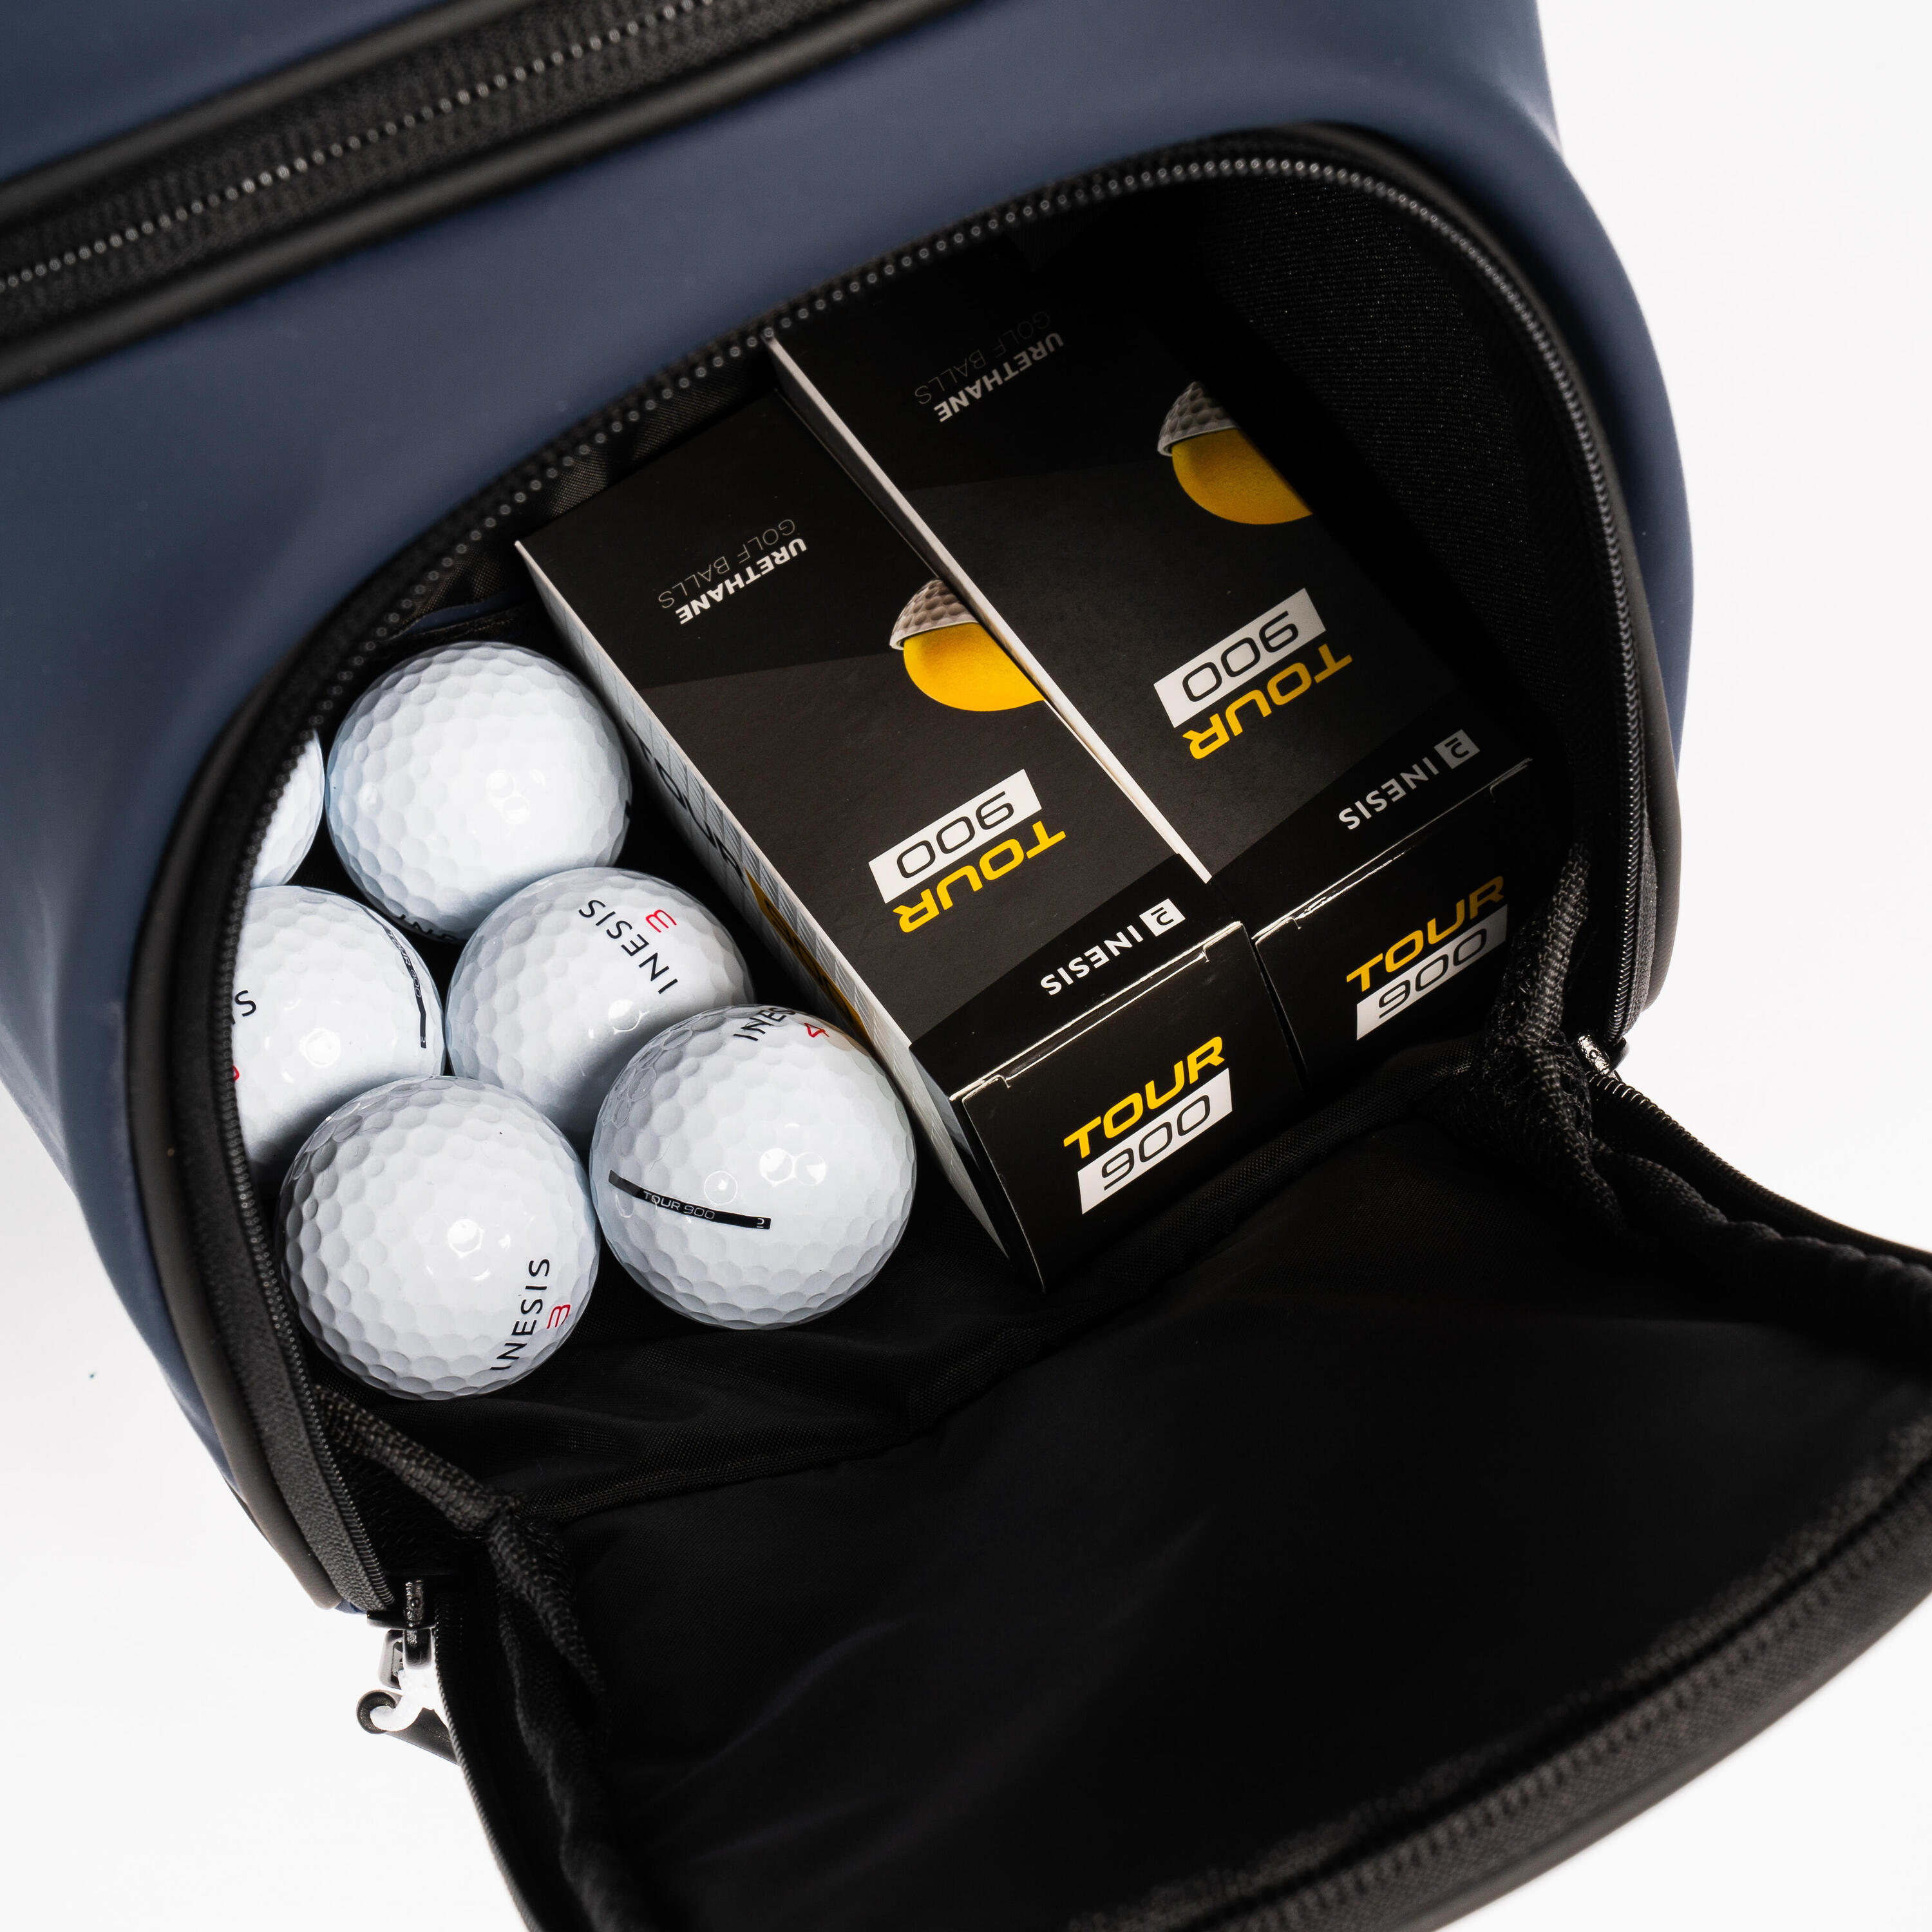 Golf trolley bag waterproof – INESIS Cart blue 6/12